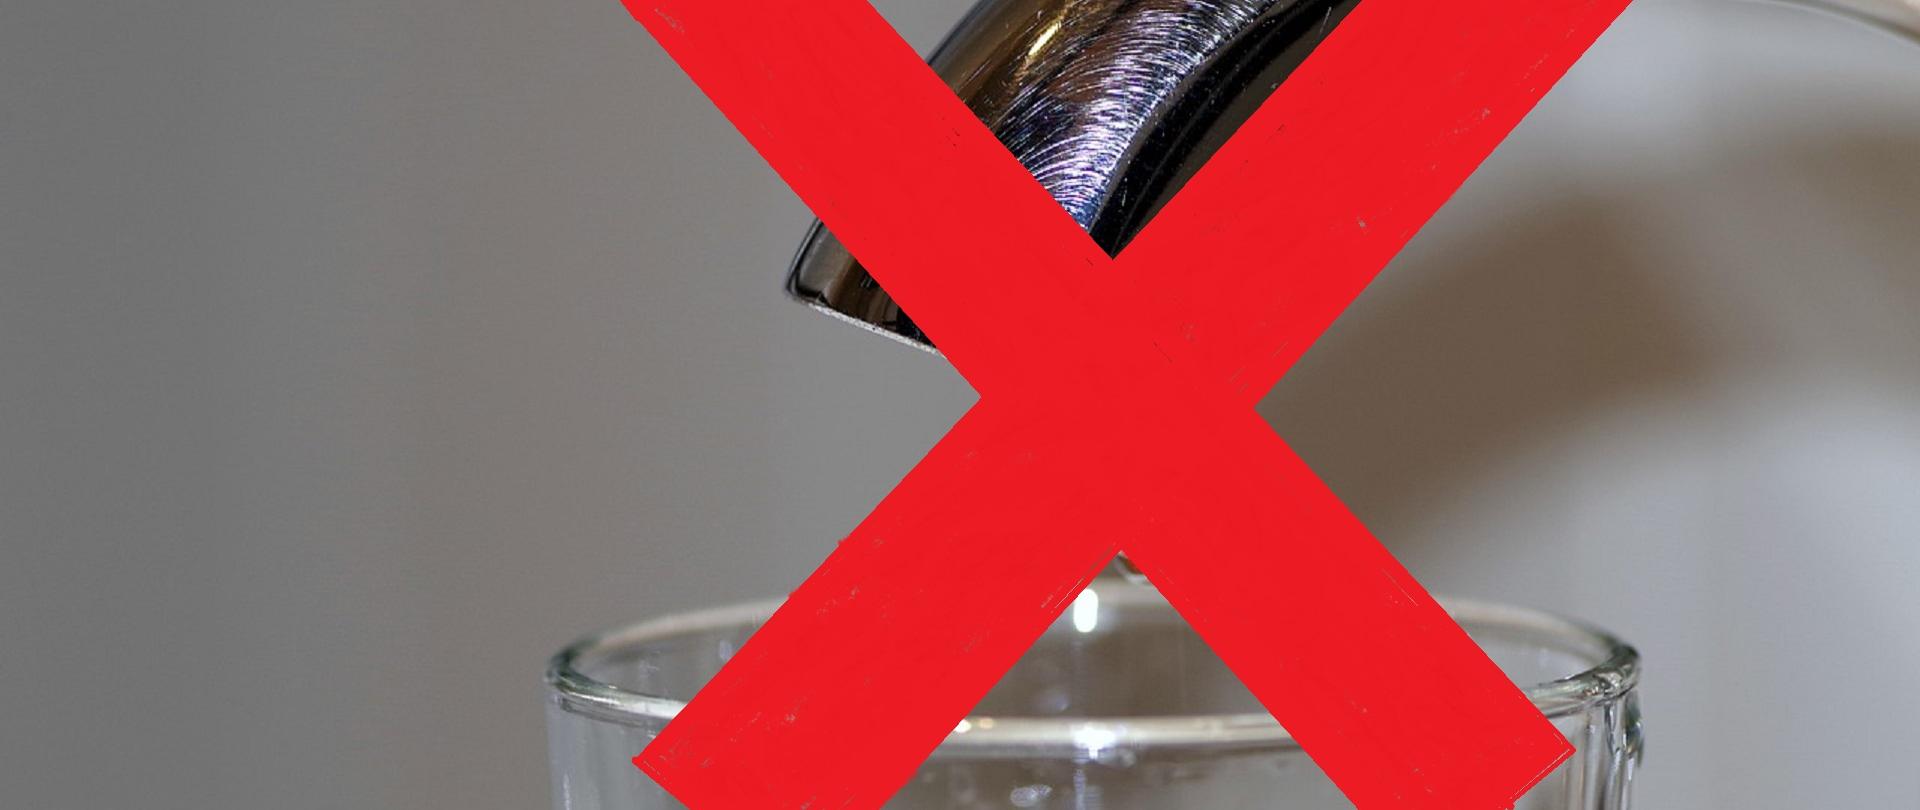 Szklanka wypełniona wodą stojąca pod kranem przekreślona czerwonym krzyżem symbolizująca zakaz picia wody z kranu 